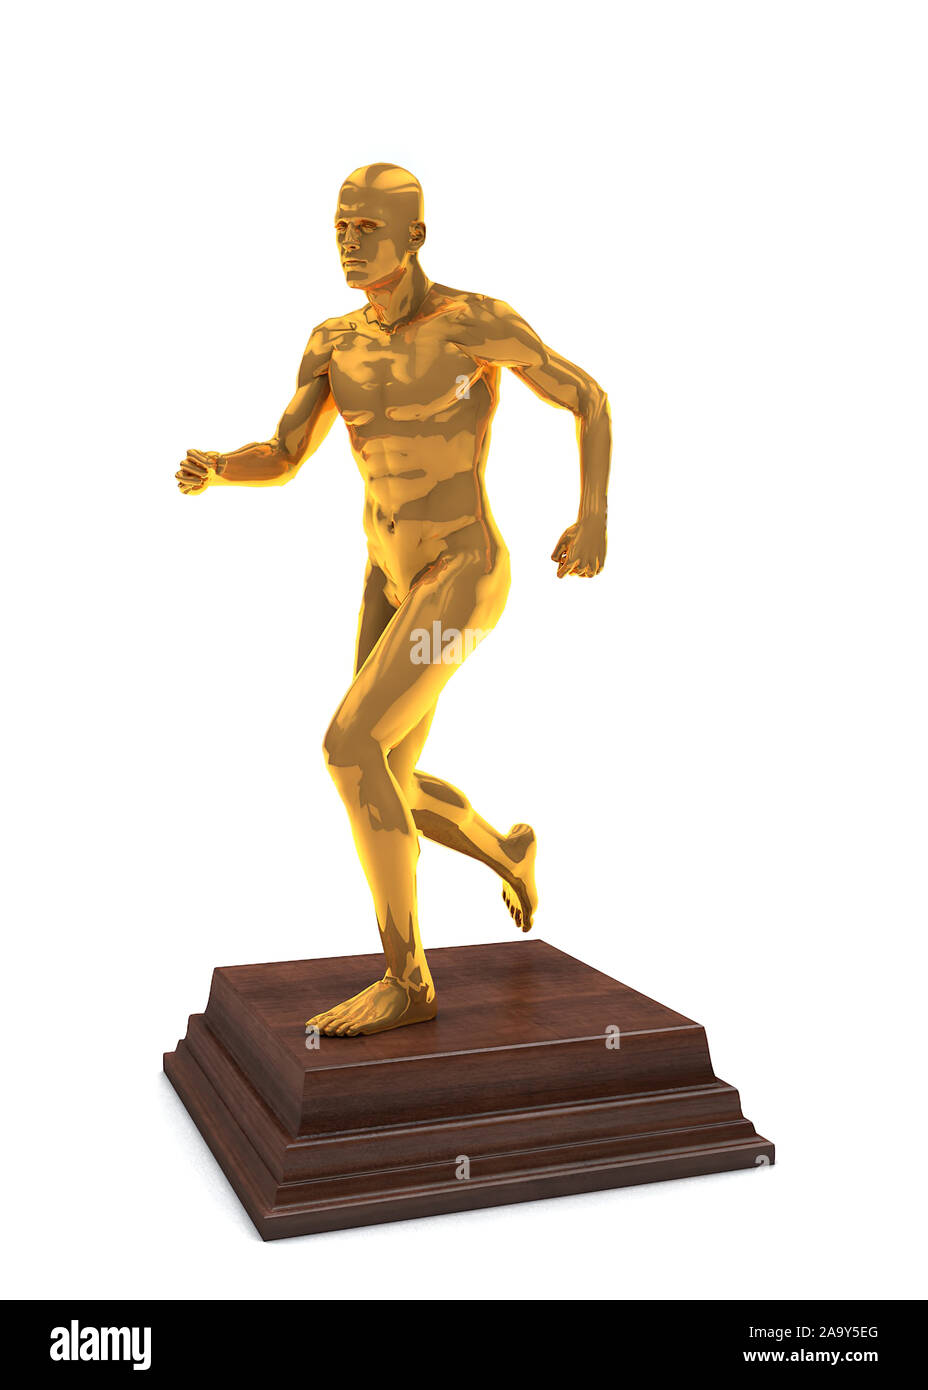 Golden prize belohnen Statuette der laufender Mann auf hölzernen Podium isoliert. 3D-Rendering Stockfoto